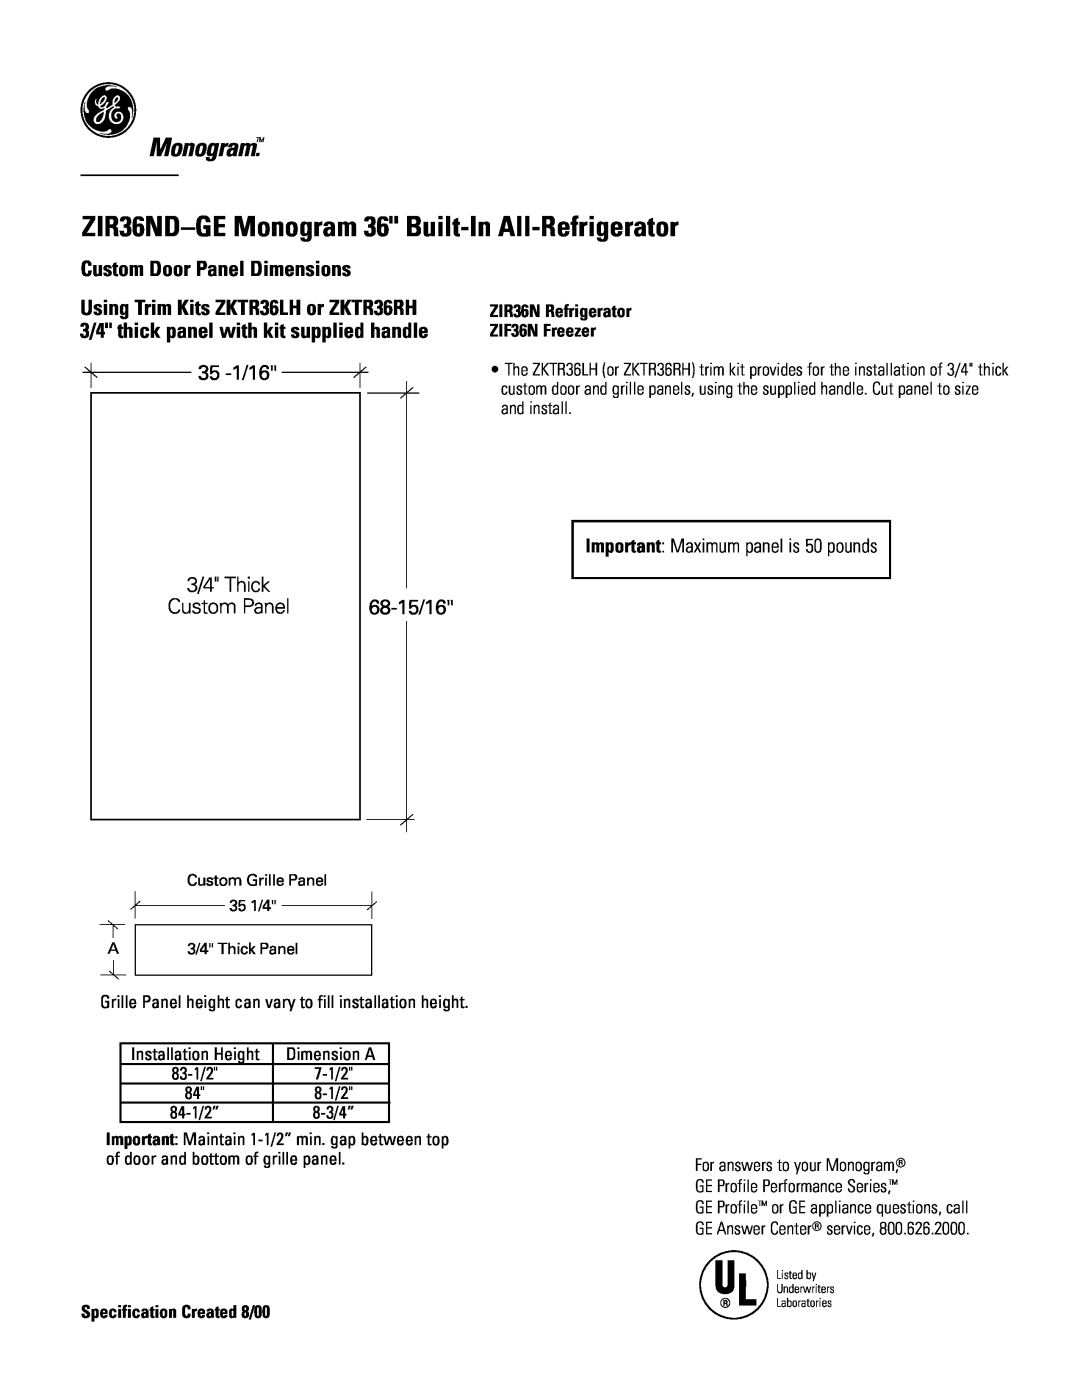 GE Monogram ZIR36NDGE ZIR36ND-GEMonogram 36 Built-In All-Refrigerator, Custom Door Panel Dimensions, 35 -1/16, 68-15/16 